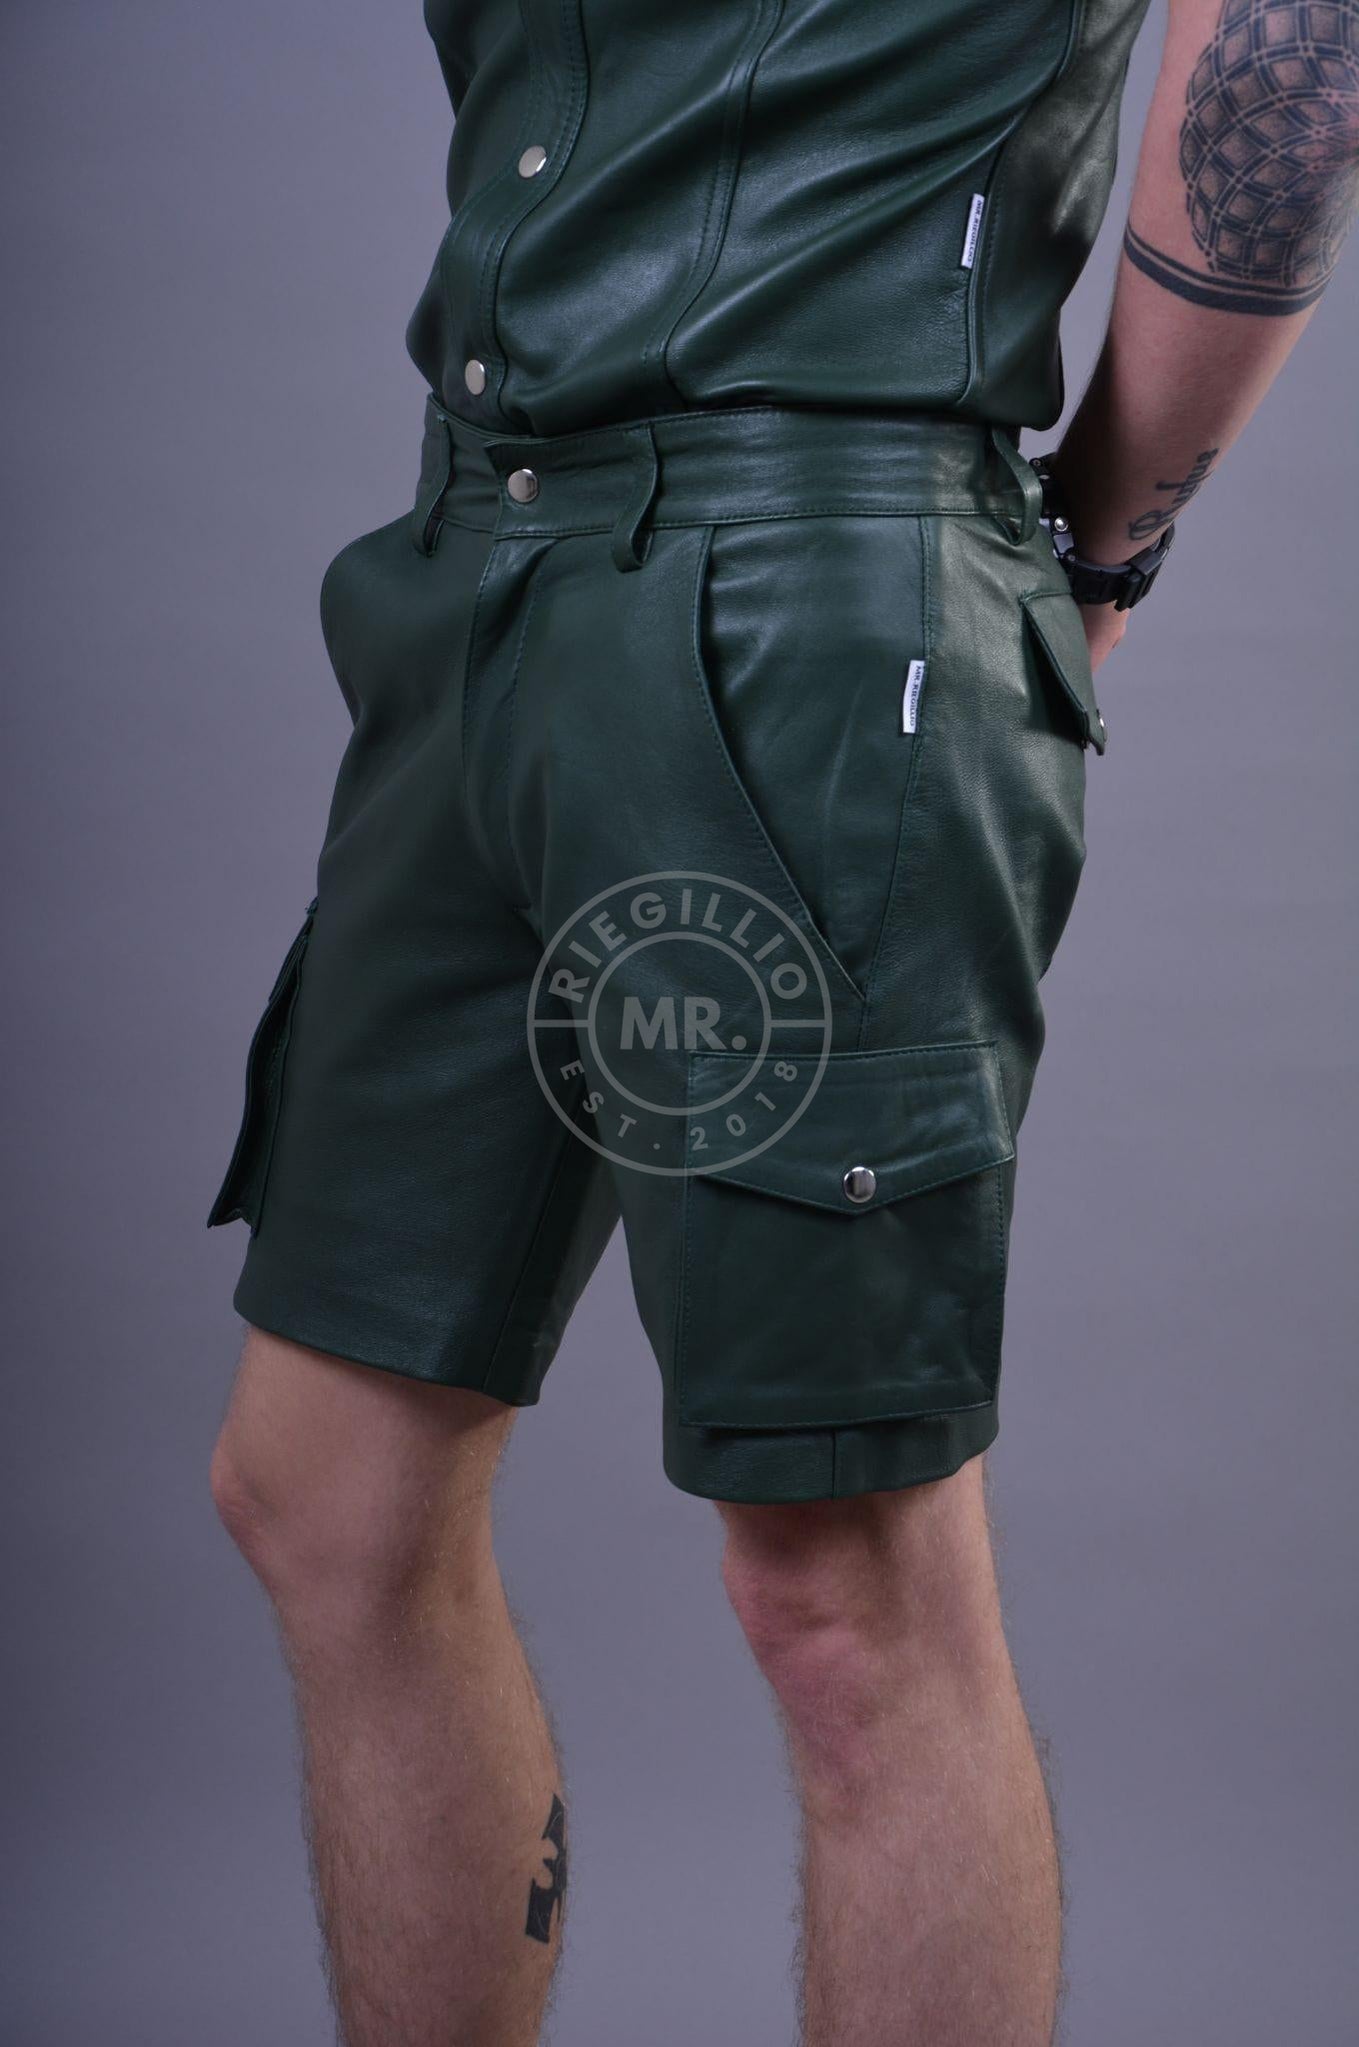 Dark Green Leather Cargo Short-at MR. Riegillio